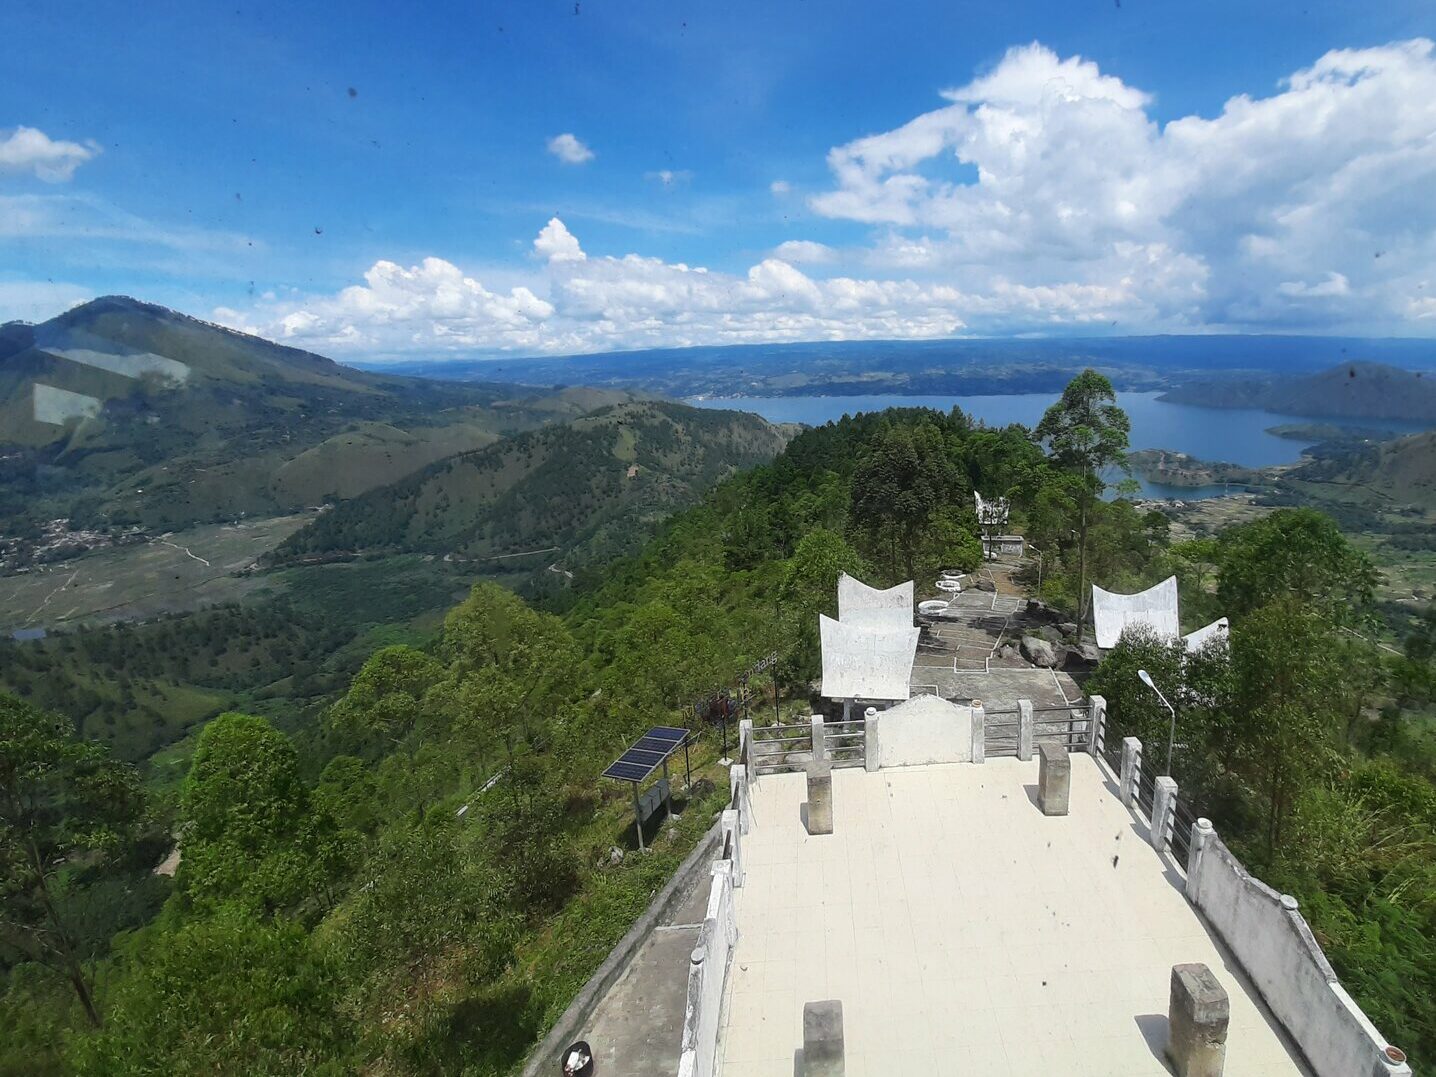 Melihat Danau Toba dari puncak Menara Pandang Tele